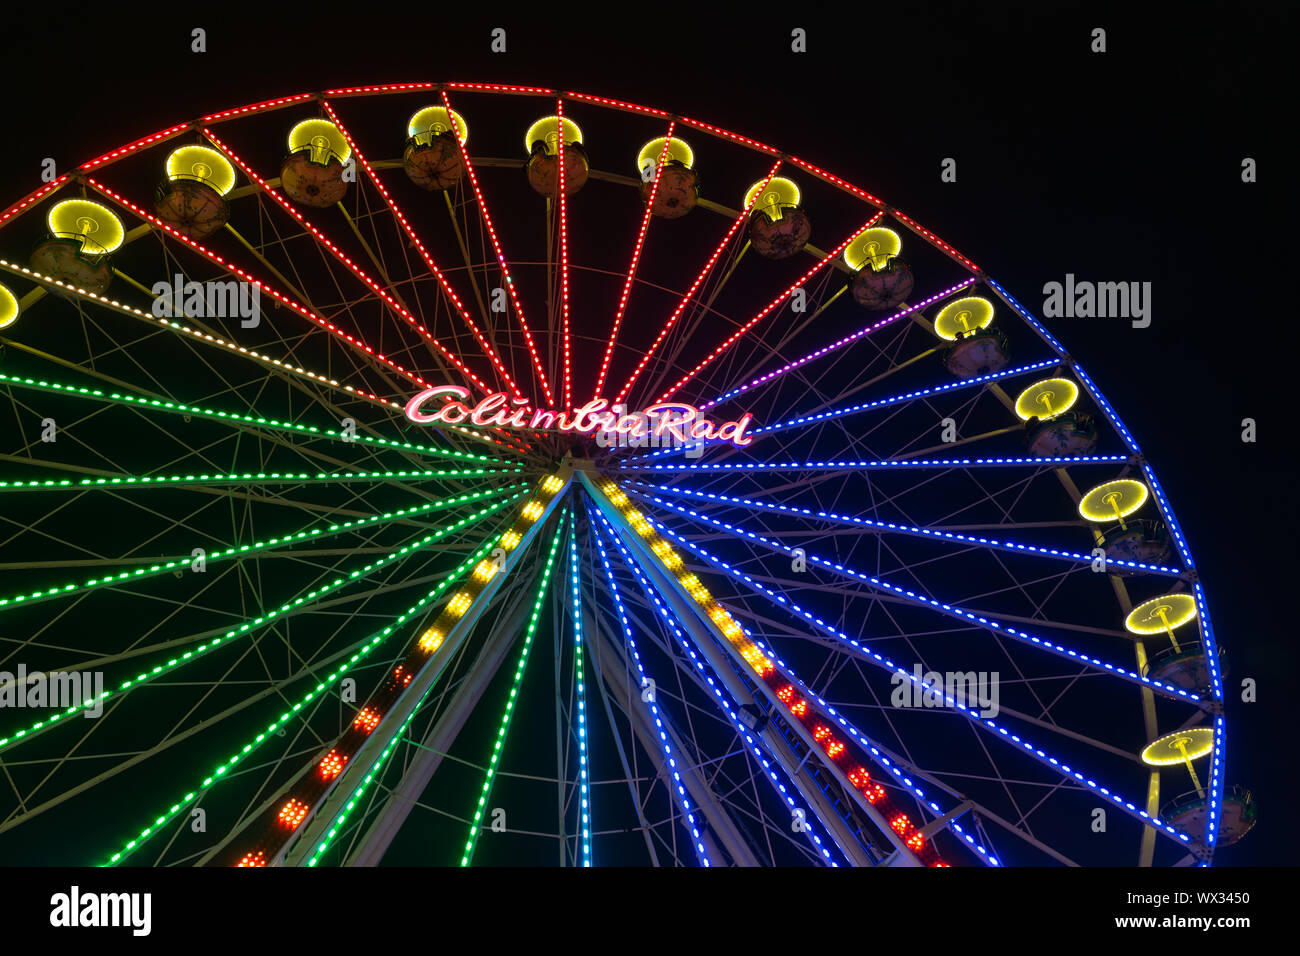 Mercato di Natale illuminato con ruota panoramica Ferris a Duisburg, Germania Foto Stock